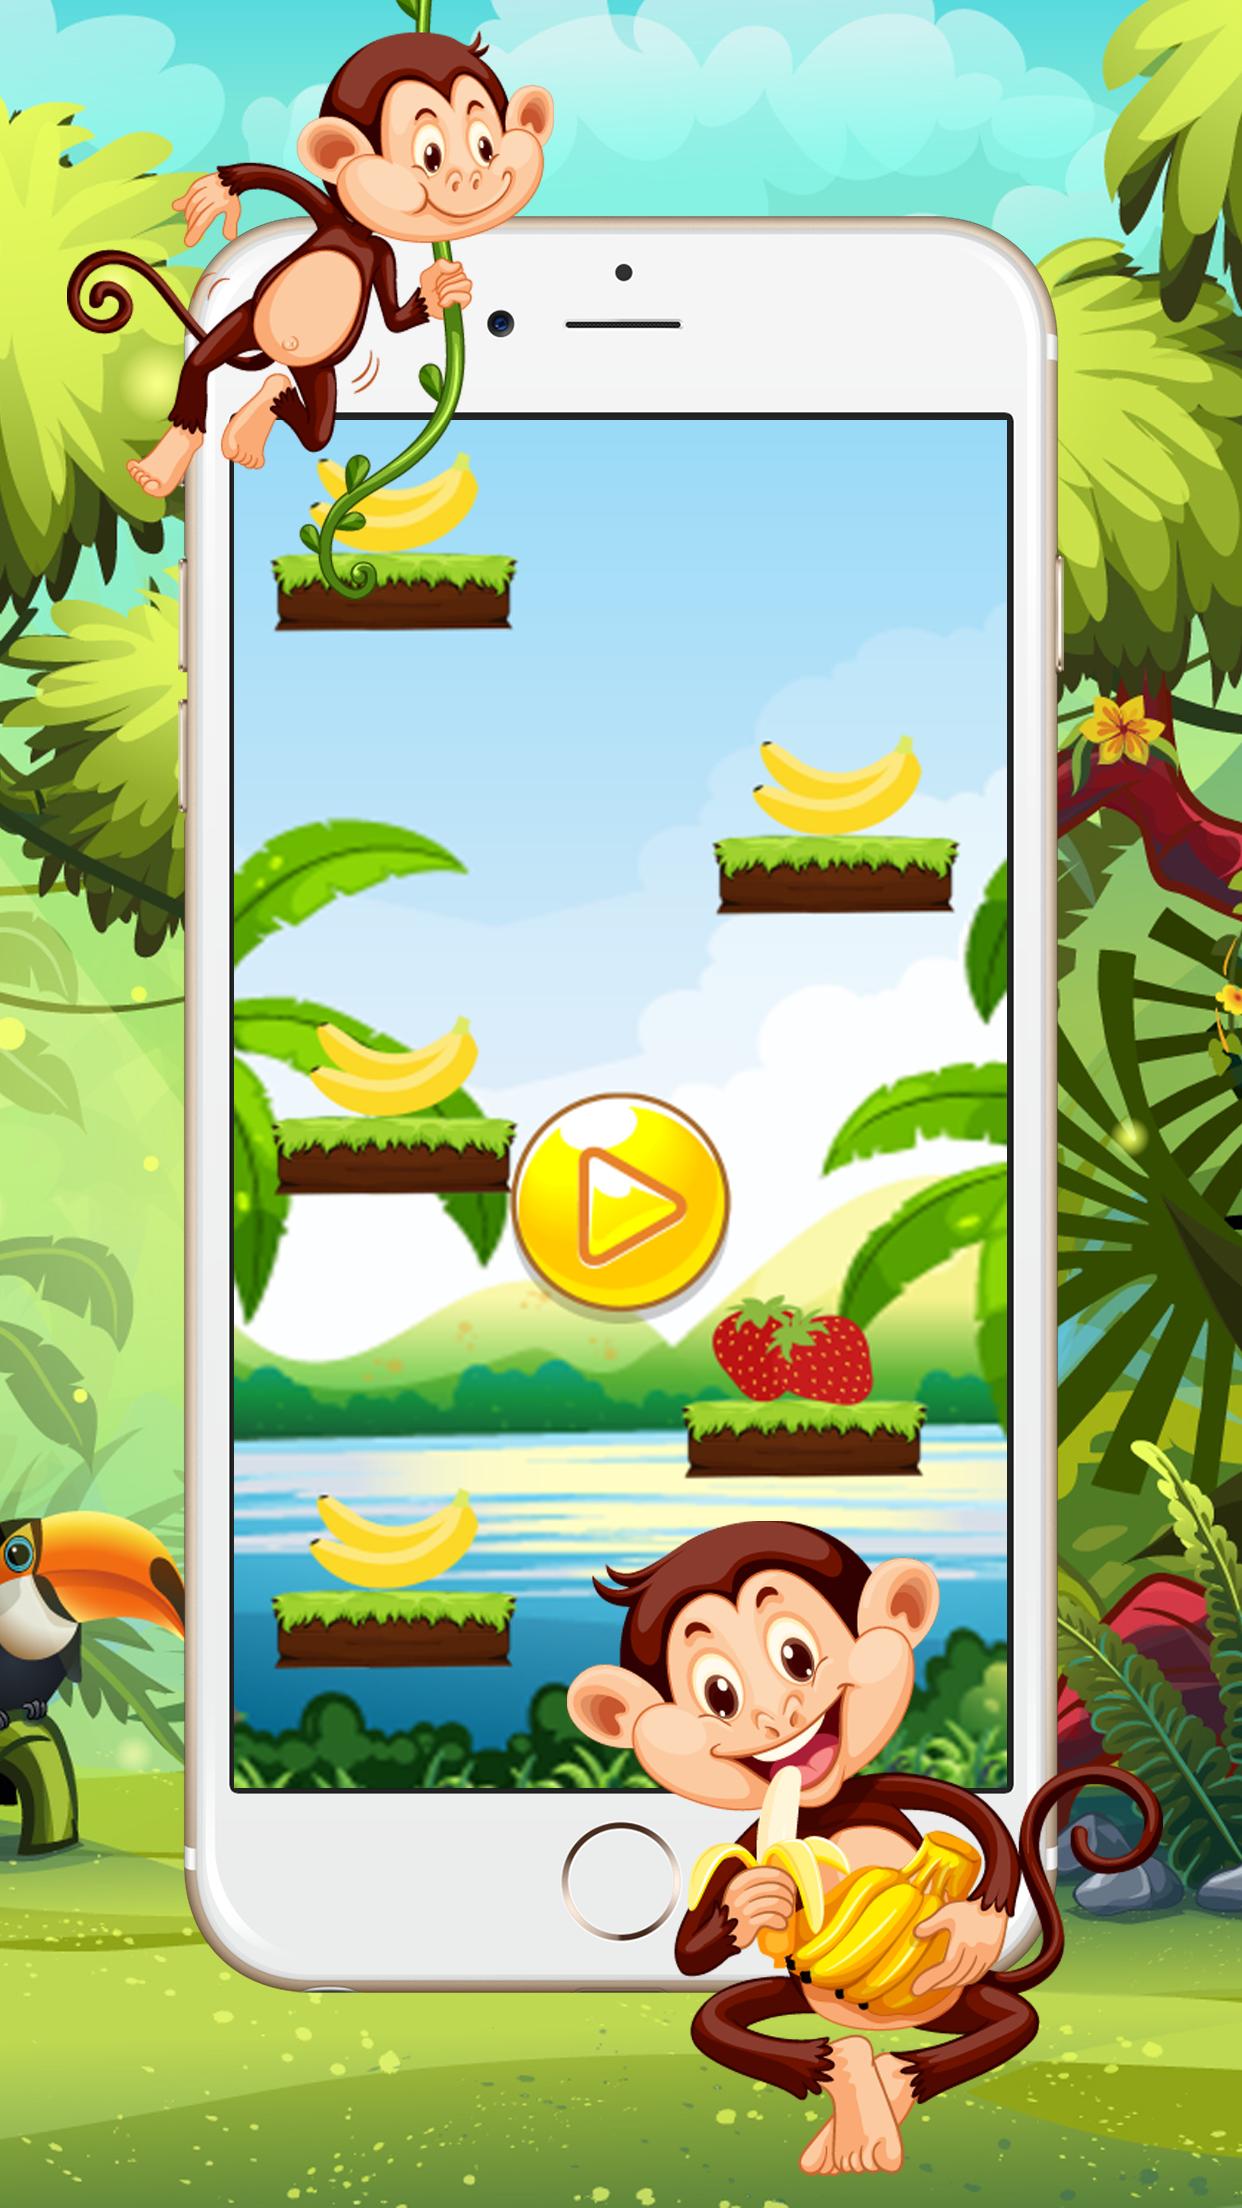 Игра где прыгает обезьянка. Прыгающая обезьяна игра. Игра про обезьян. Игра обезьяна и бананы. Популярная игра с обезьянкой.